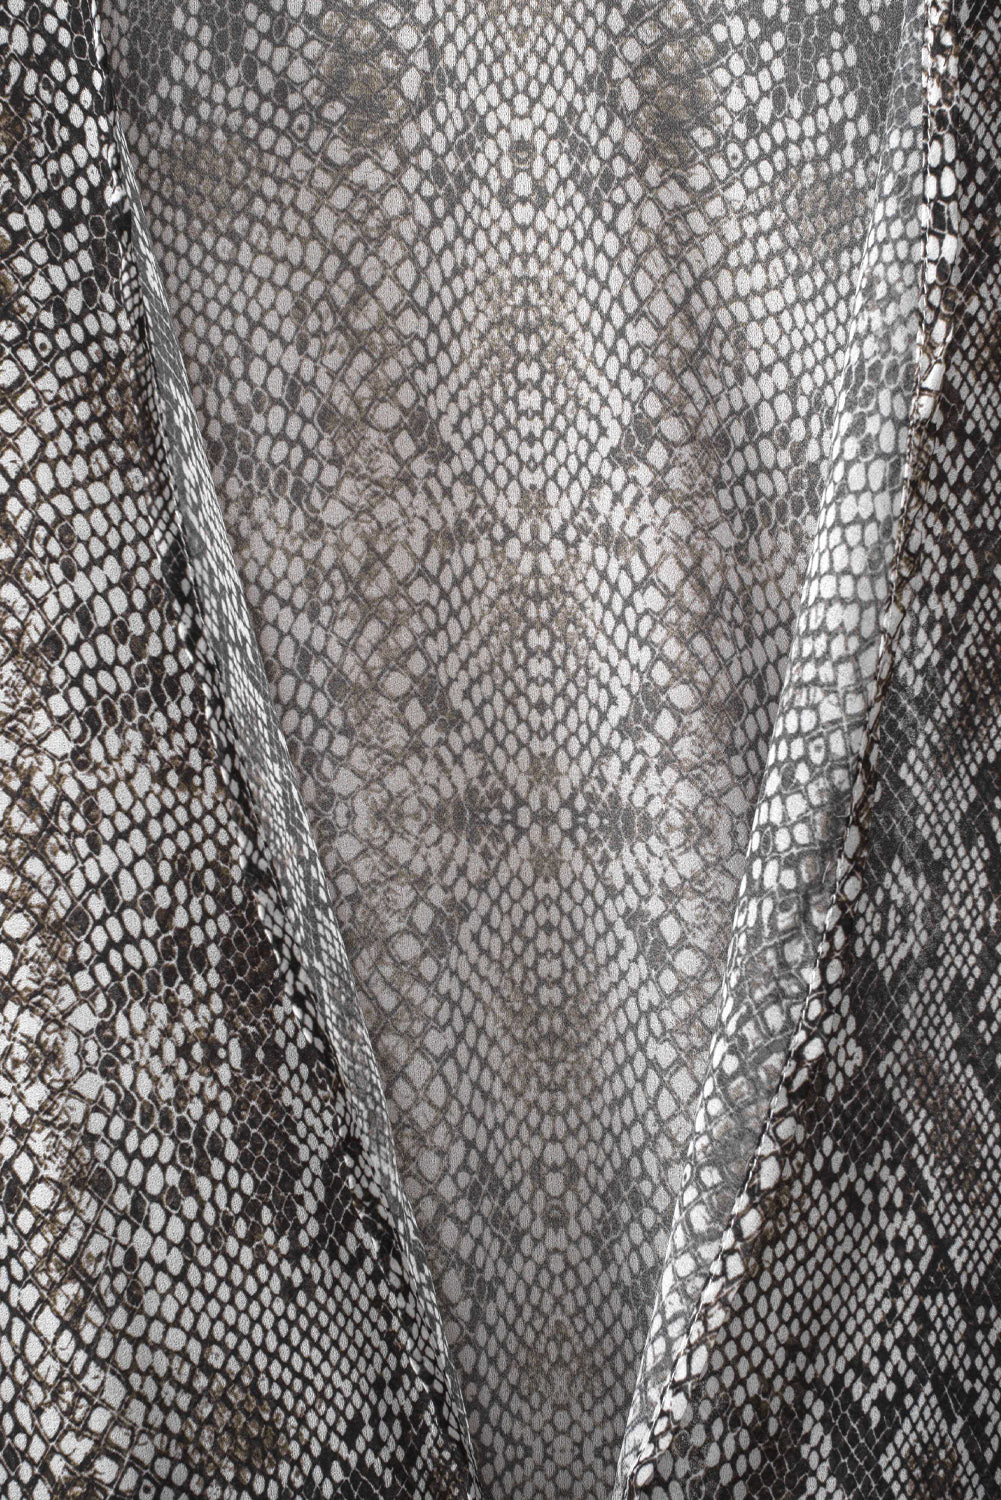 Gray Snakeskin Print Ruffled Open Front Long Cover-up Kimonos JT's Designer Fashion